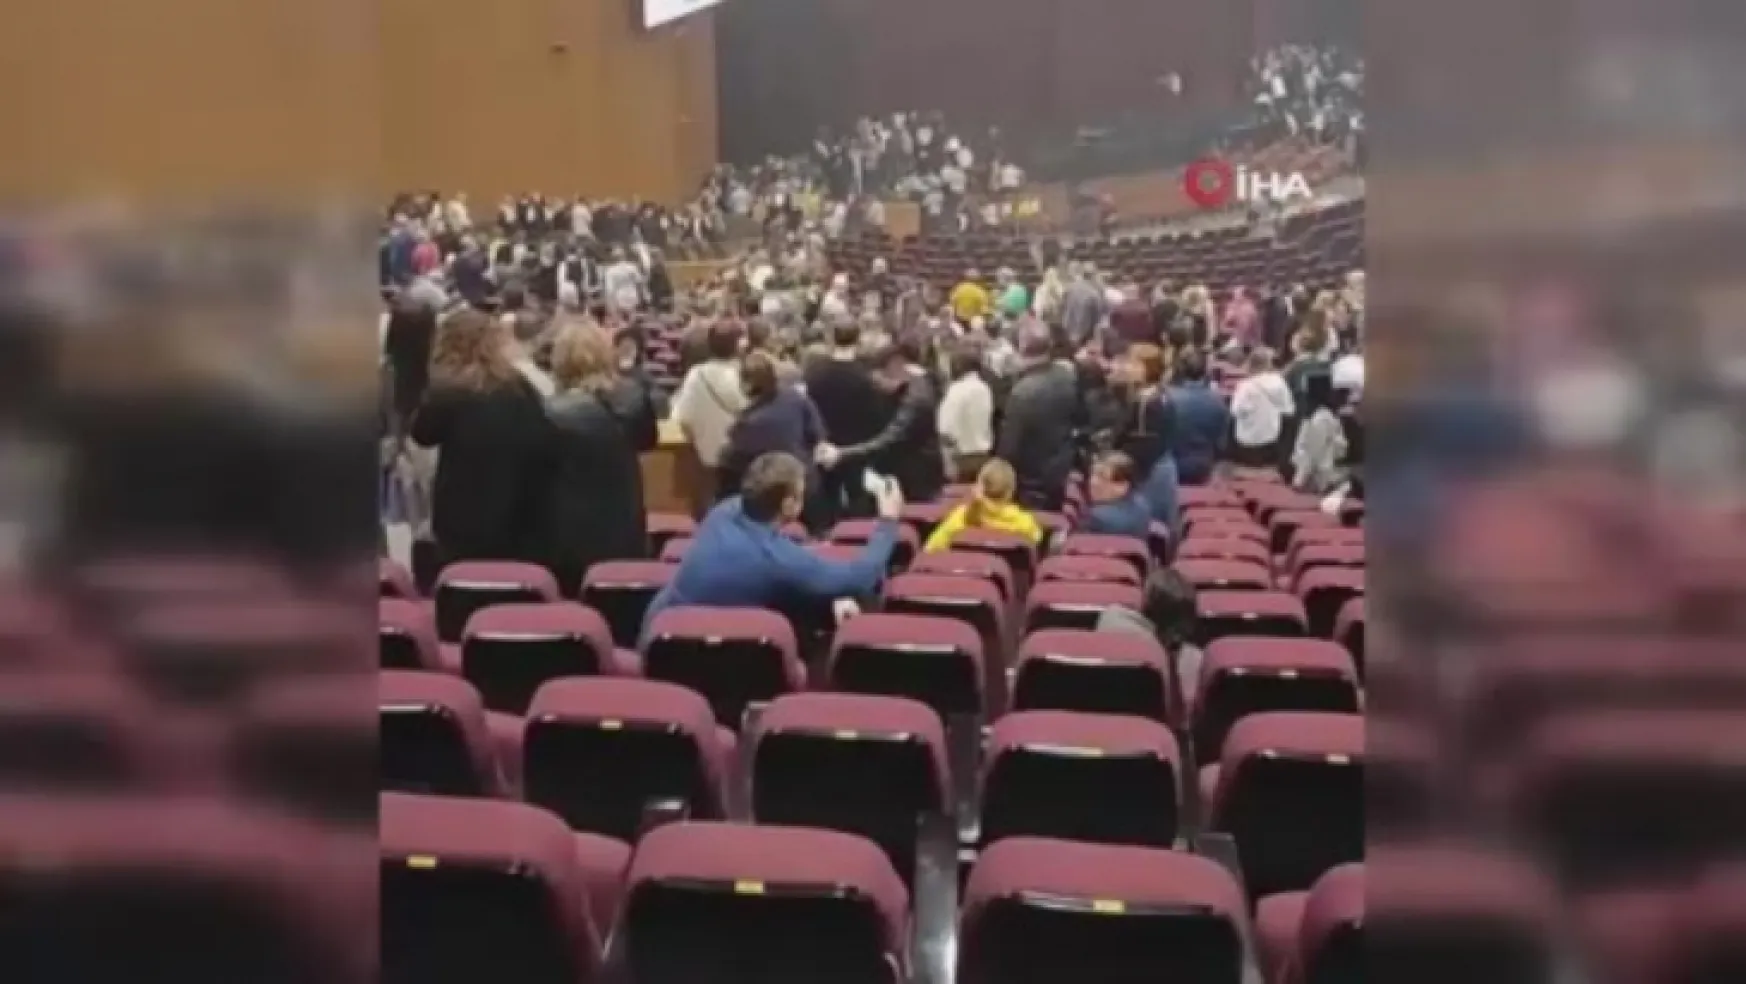 Moskova'da konser salonuna silahlı saldırı: 40 ölü